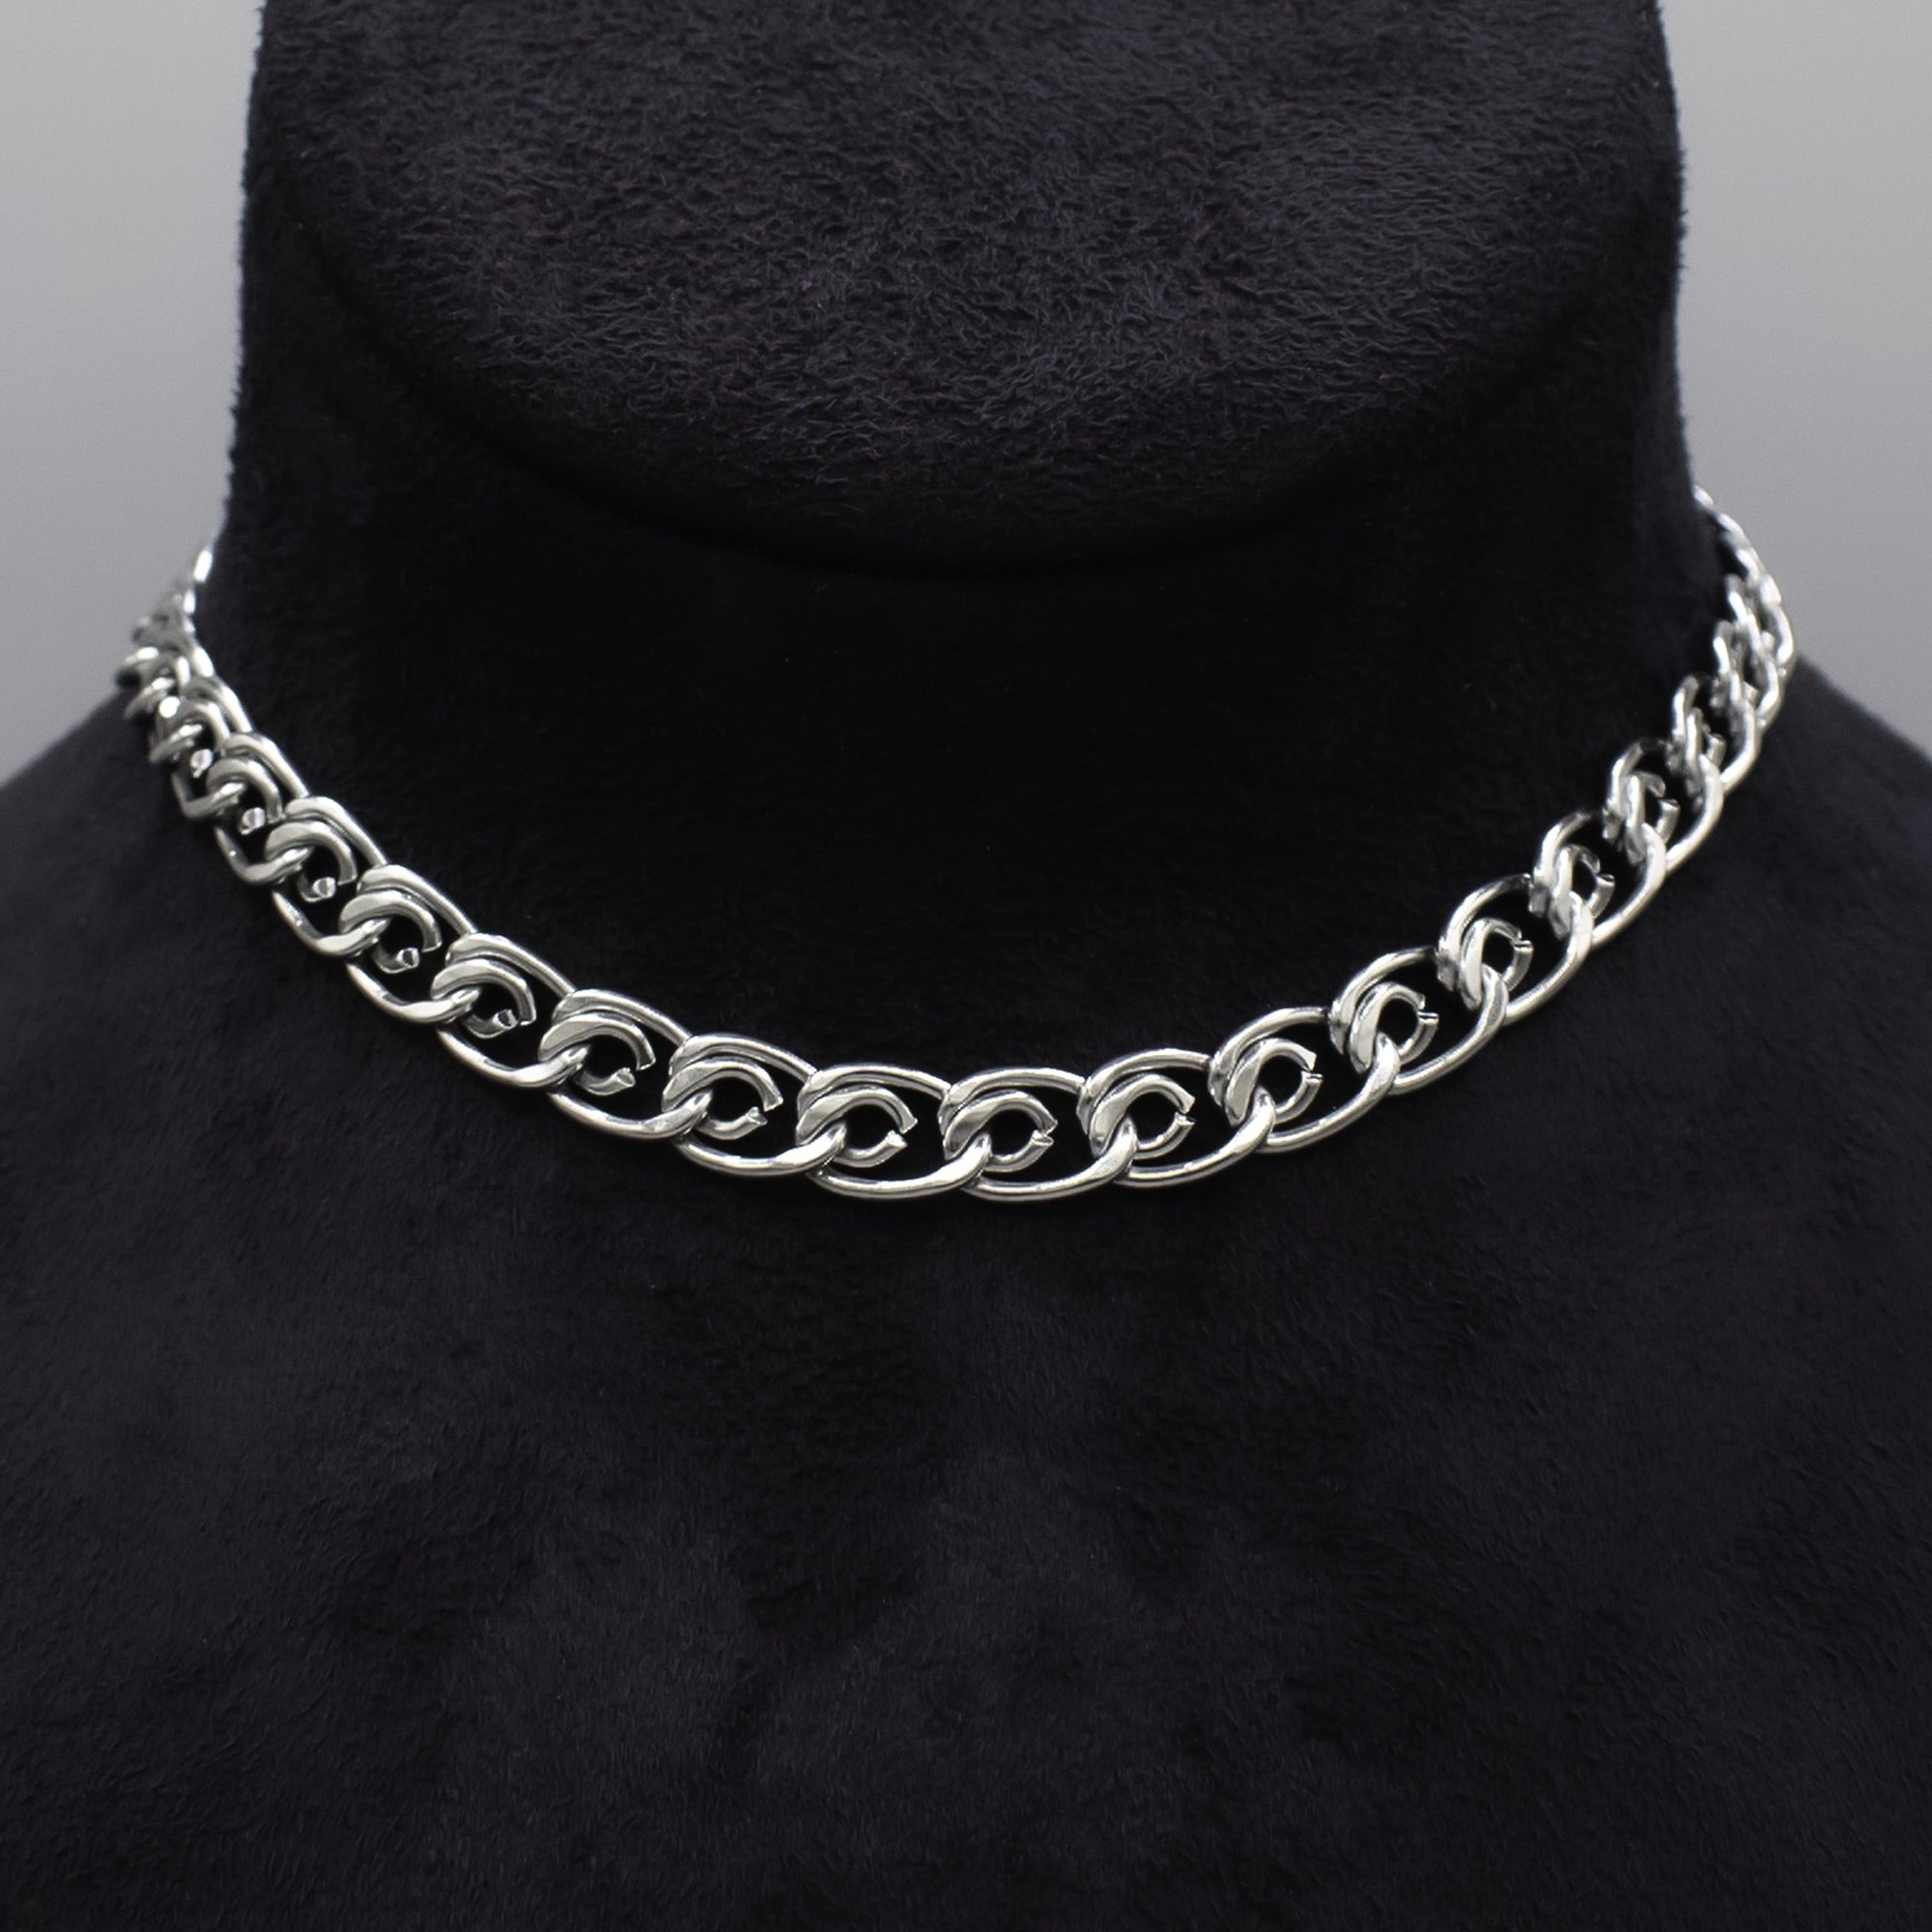 Lumachina Choker Necklace - (Silver) 8mm